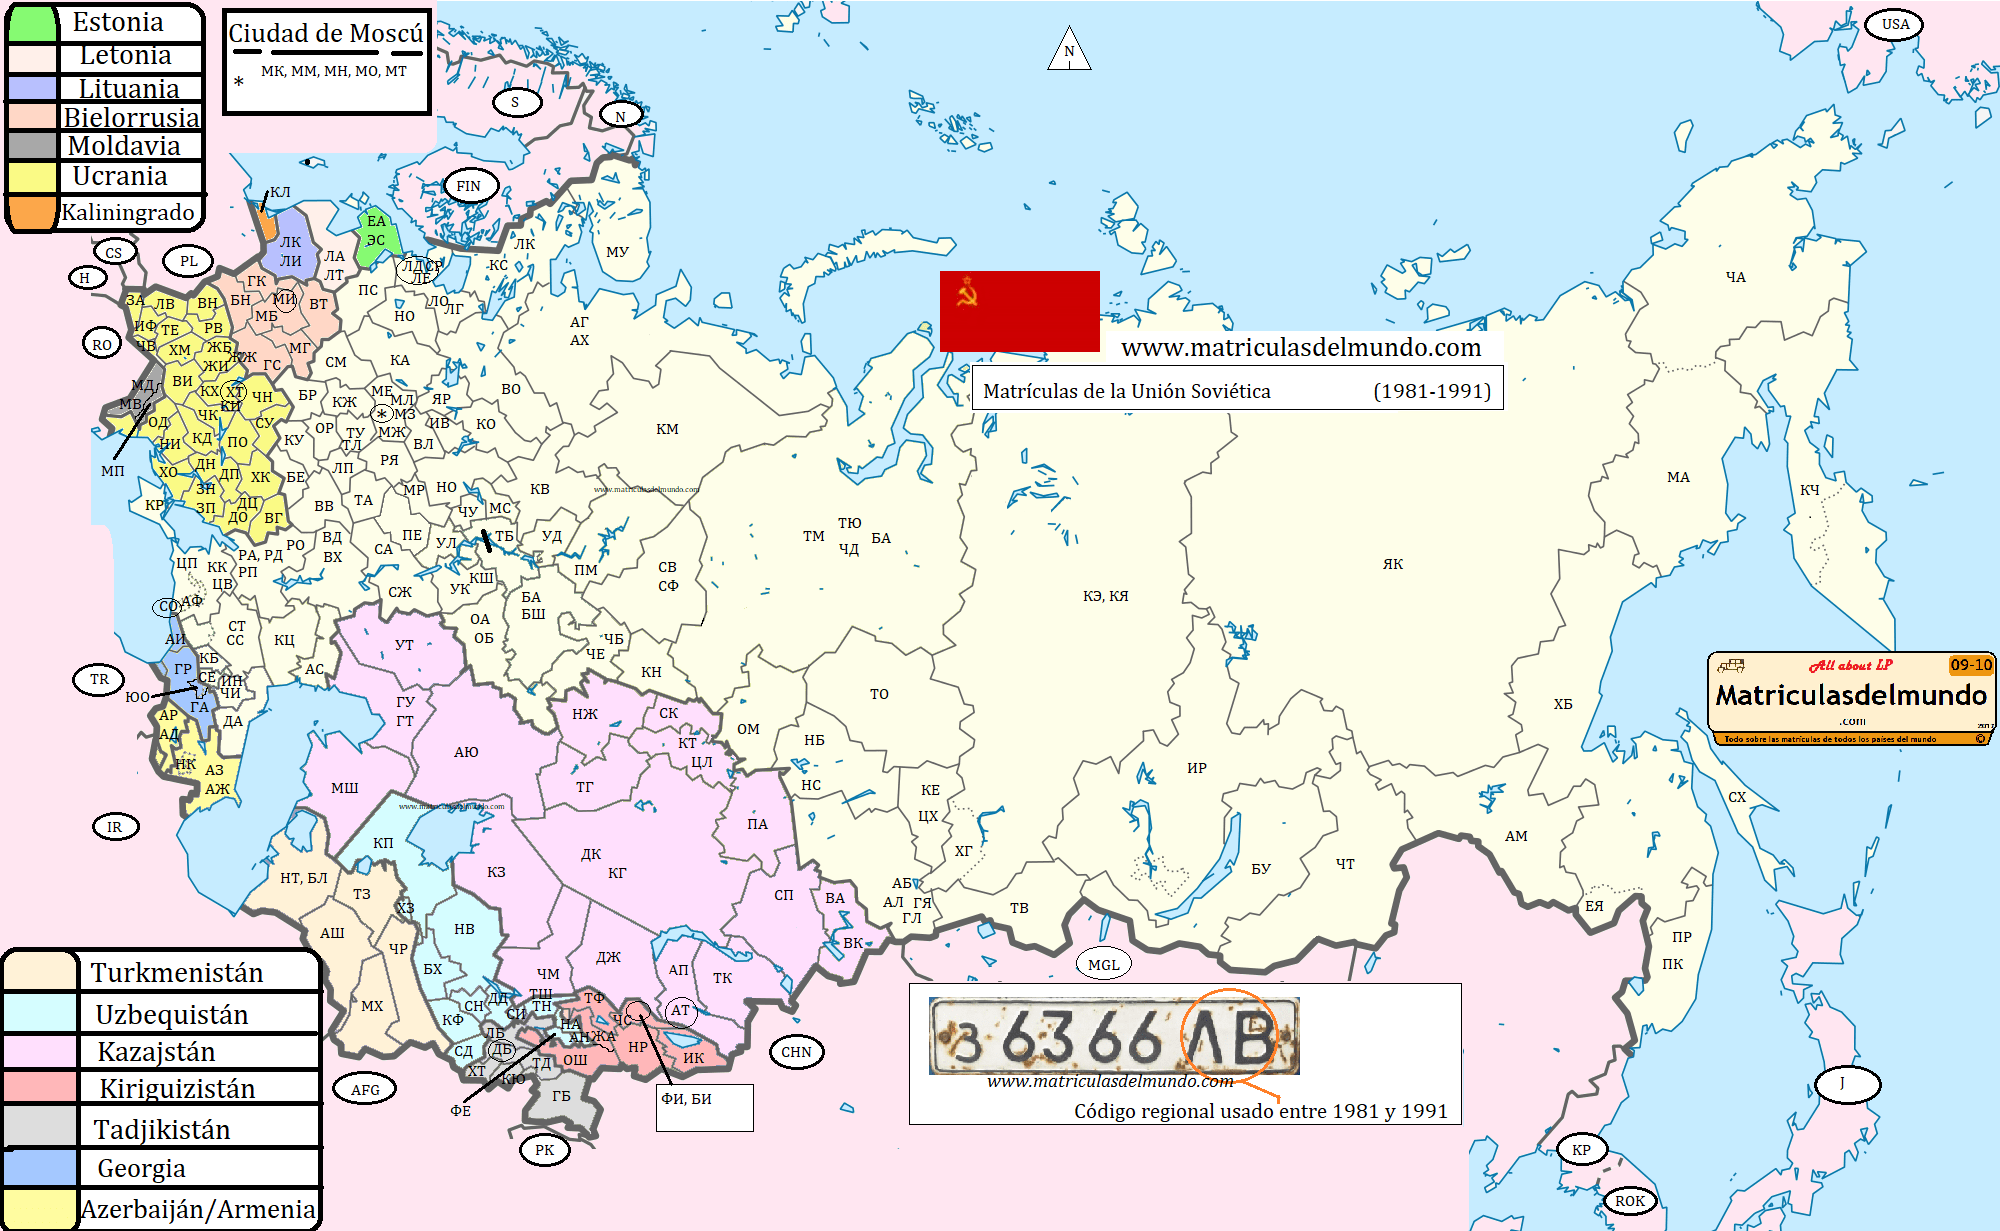 mapa de matriculas por regiones de la URSS (Union Sovietica) con los códigos e información. De dónde es en la Unión Soviética